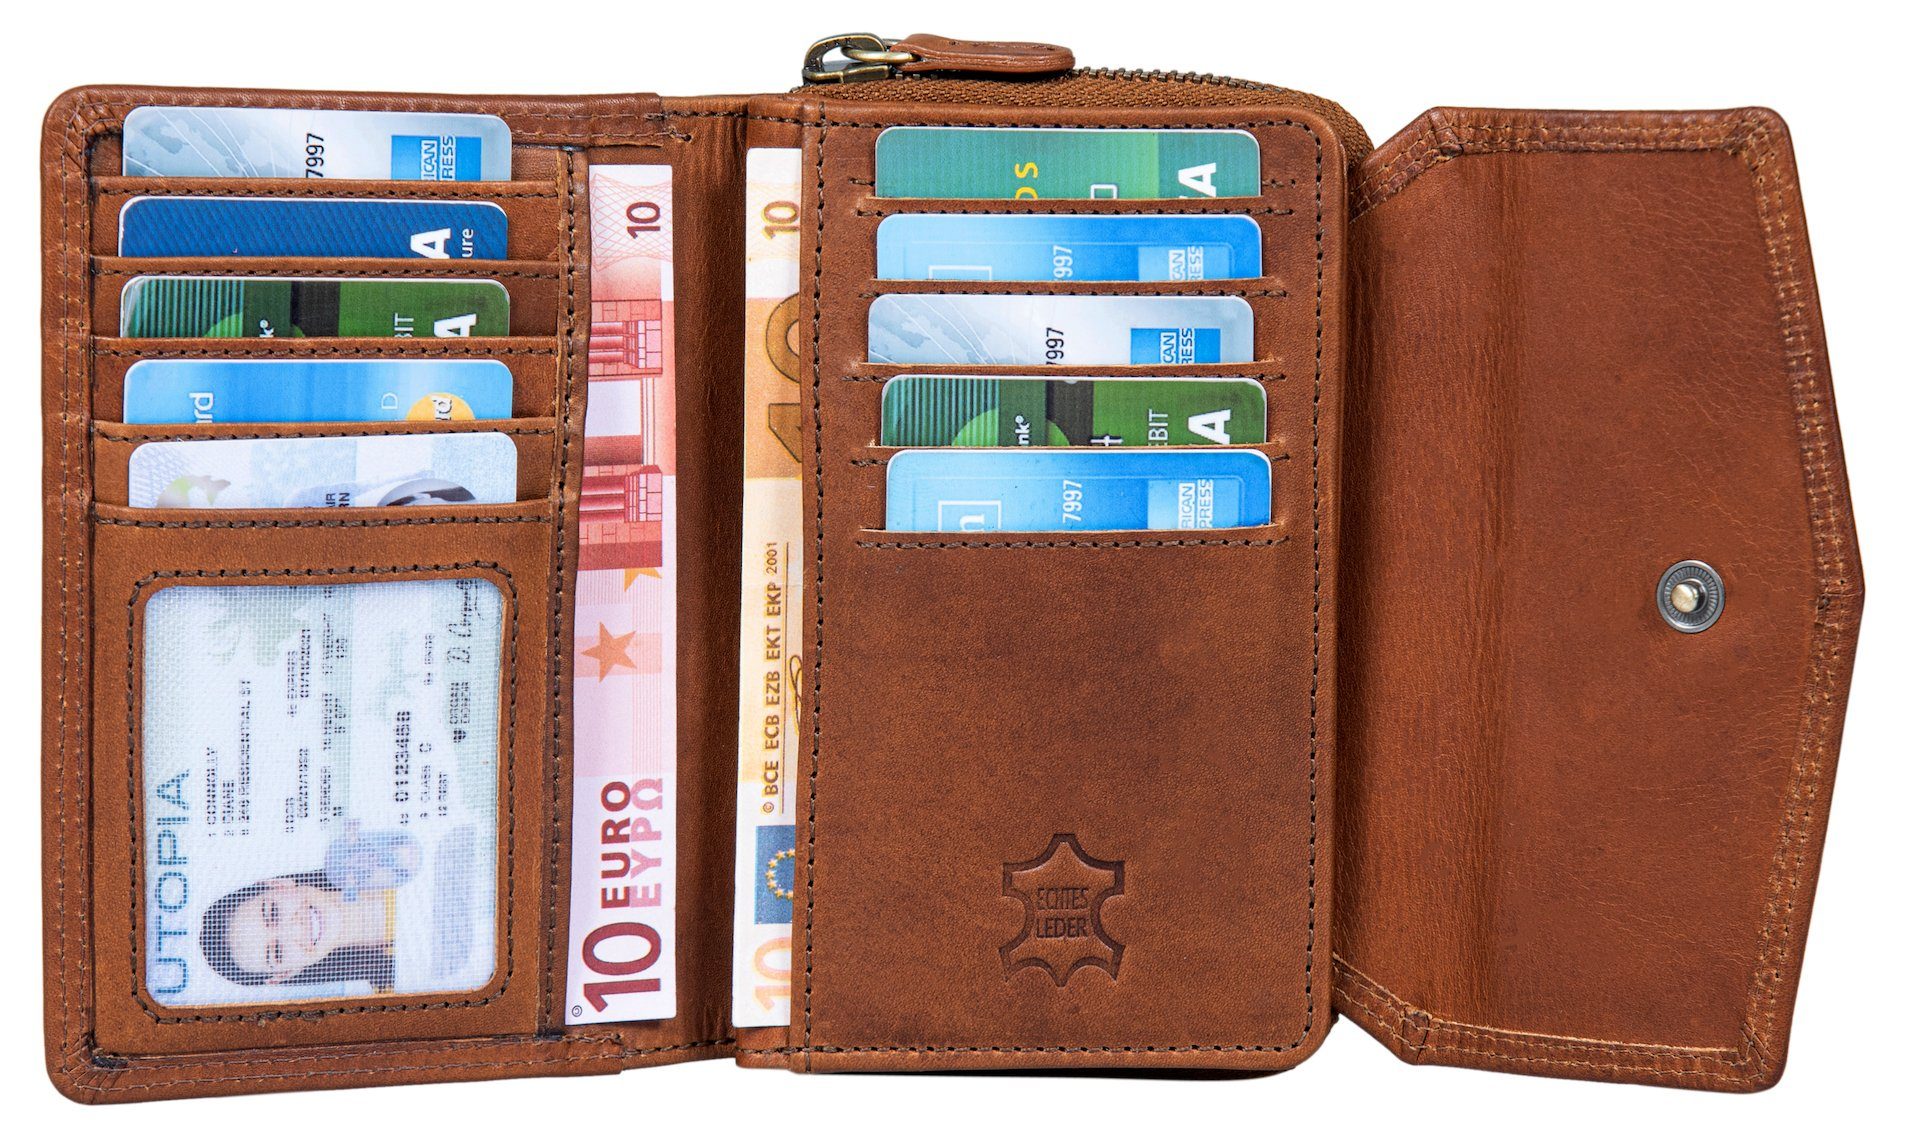 Benthill Geldbörse Damen Portemonnaie Kartenfächer Echt Leder RFID-Schutz Vintage Braun Reißverschlussfach Münzfach Kreditkartenetui, Portmonee